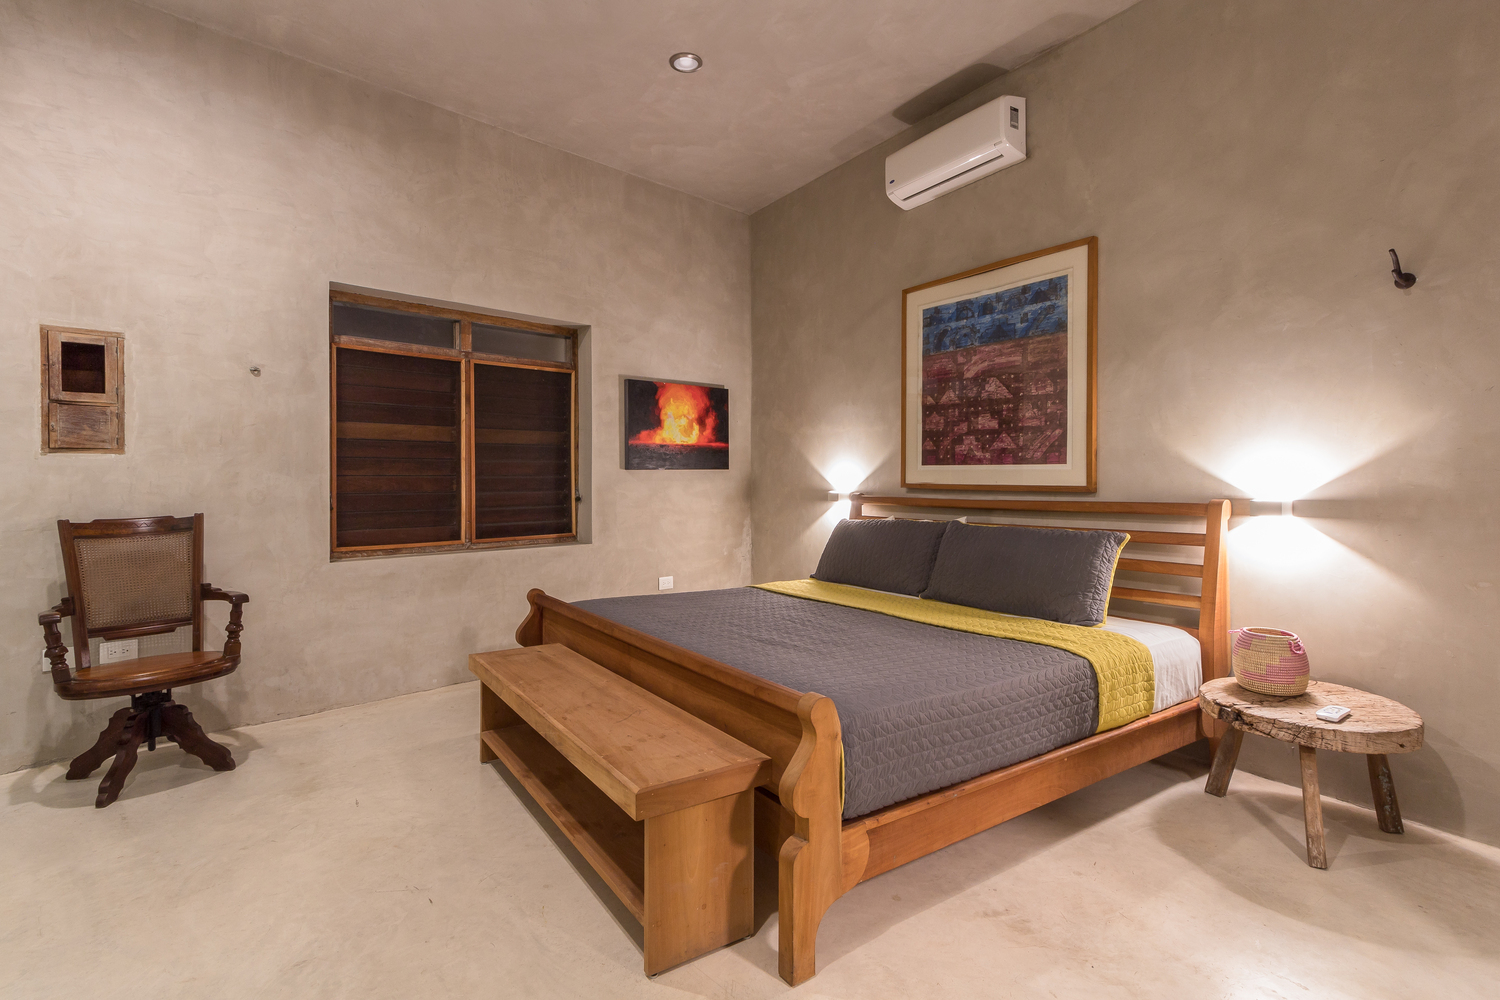 hình ảnh toàn cảnh phòng ngủ phong cách tối giản với giường gỗ, ghế bành thư giãn, bàn đầu giường, tranh trang trí 